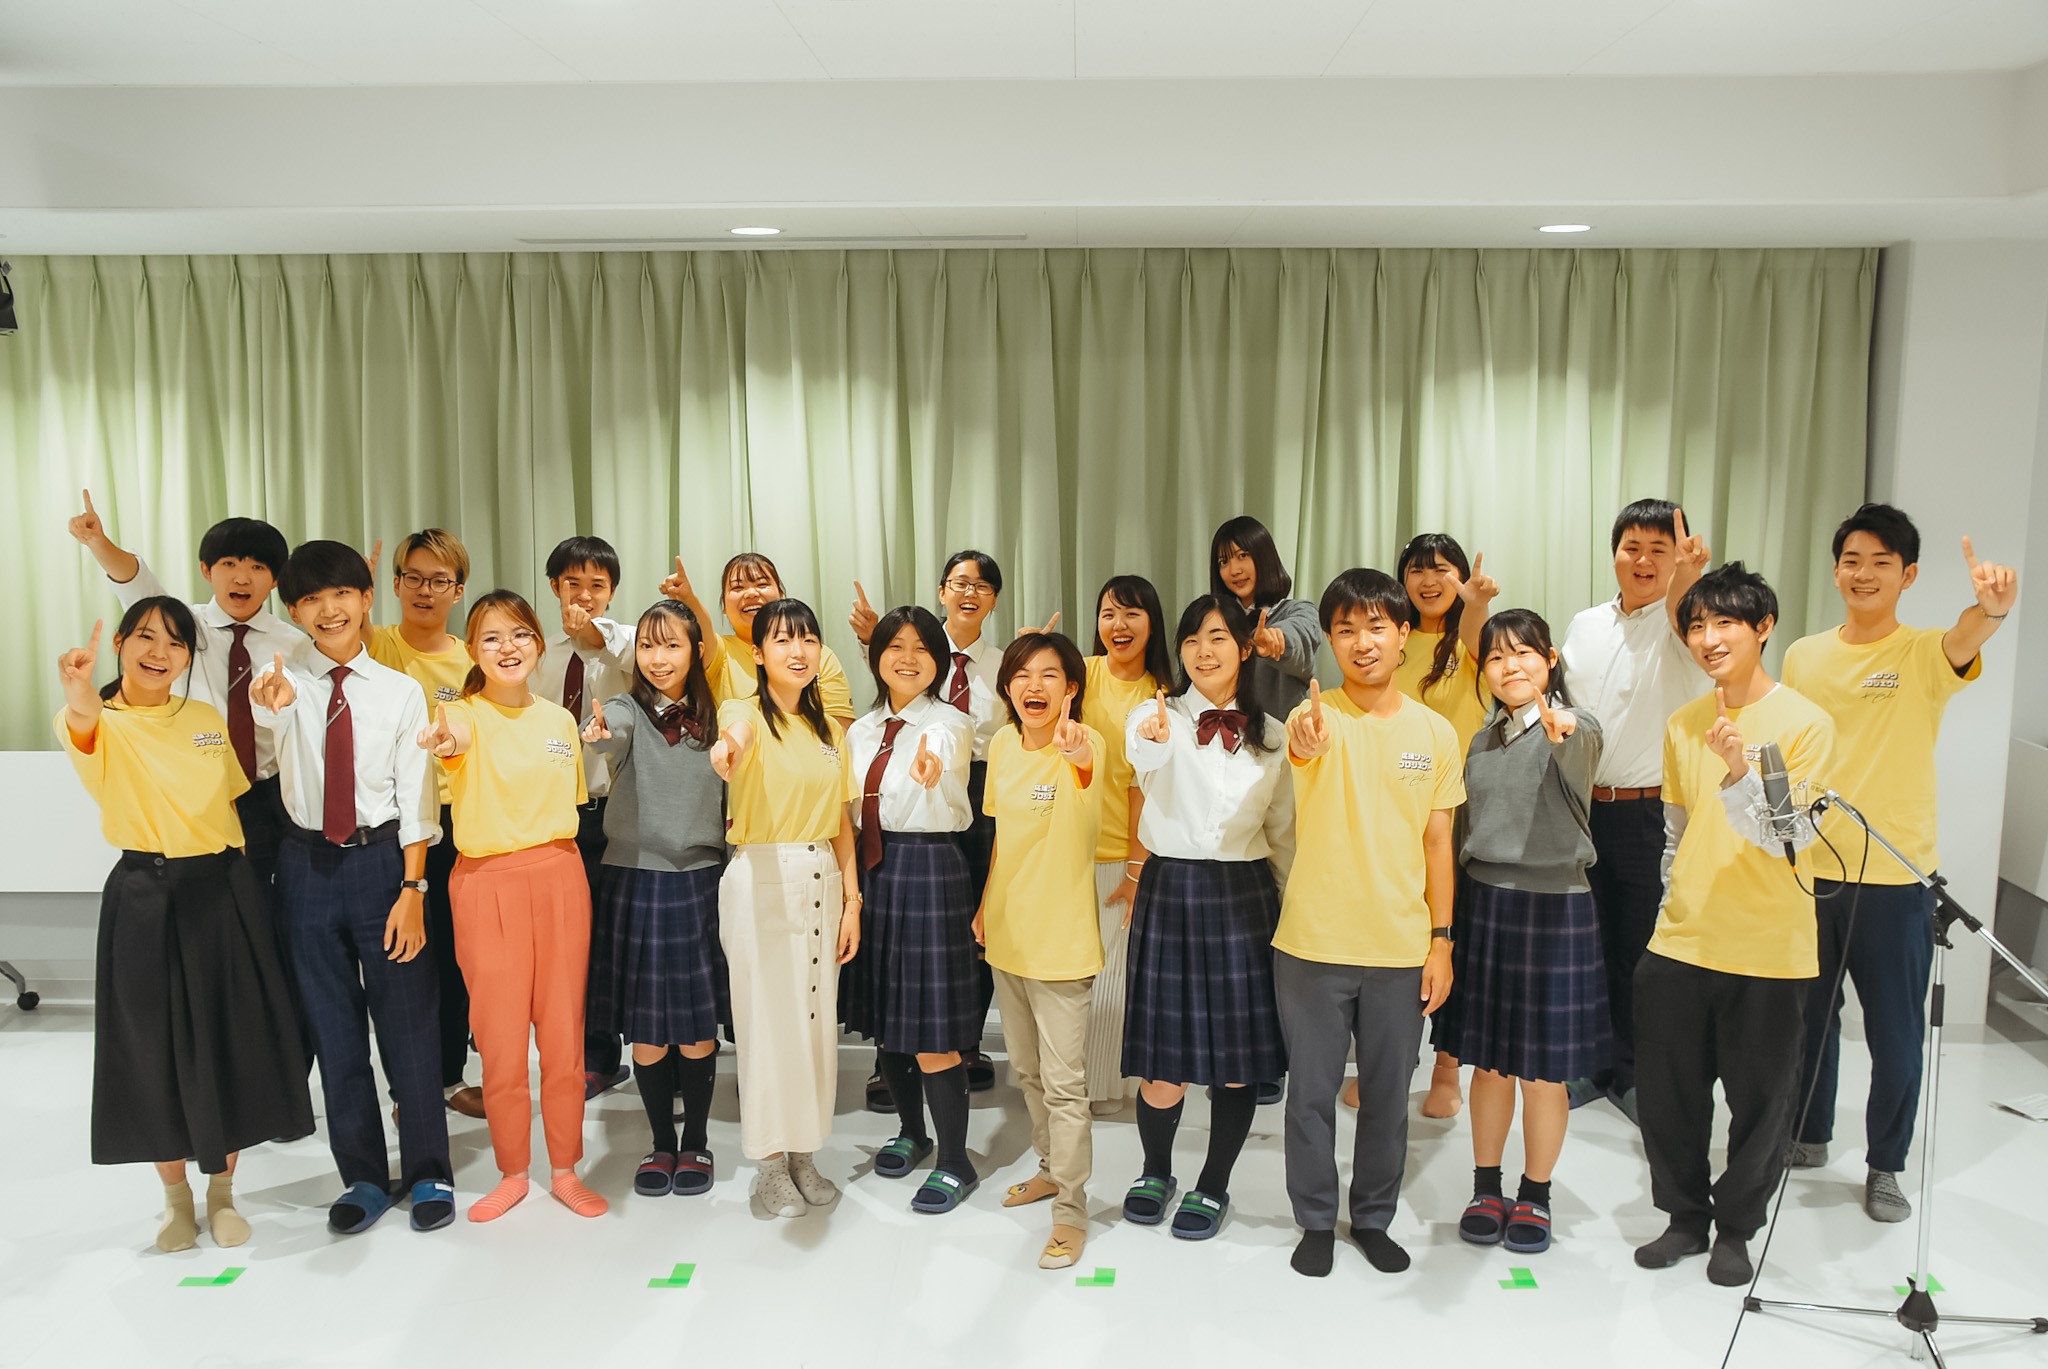 京都橘学園の学生・生徒がコーラスとして参加した『STORIES 2022~ KYOTO TACHBANA ver.』が完成！！